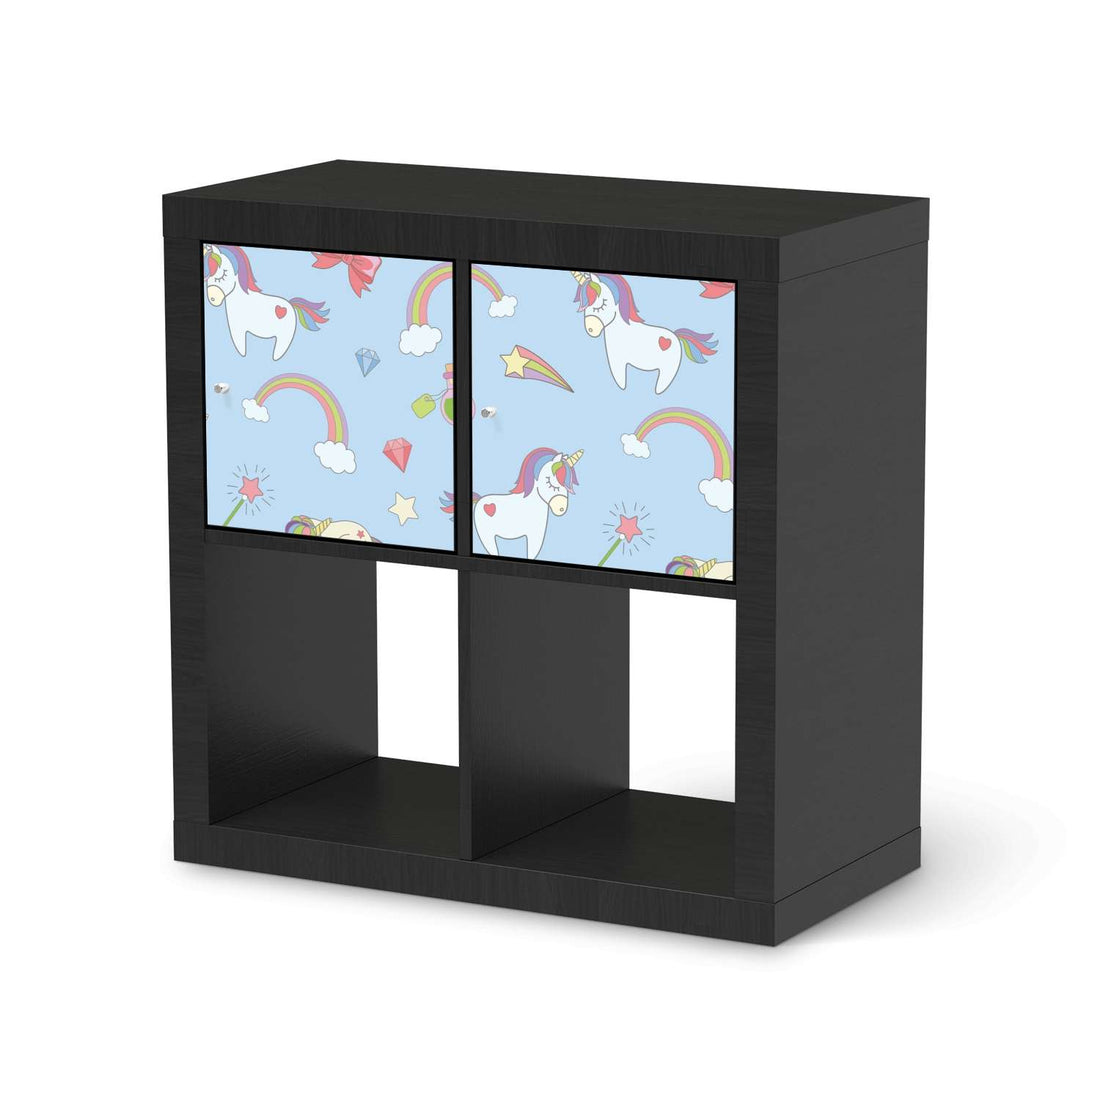 Möbel Klebefolie Rainbow Unicorn - IKEA Expedit Regal 2 Türen Quer - schwarz